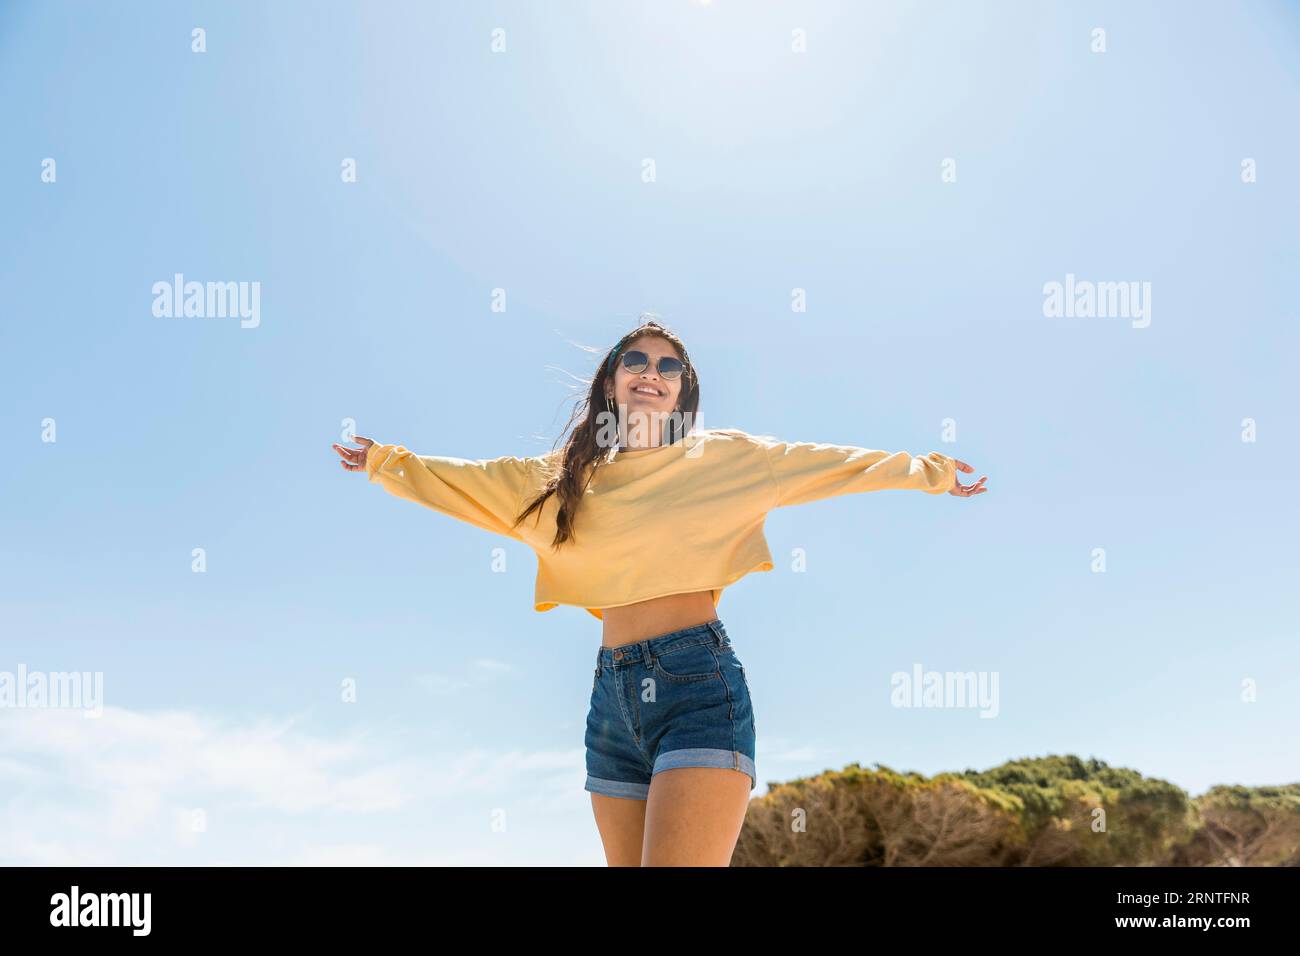 Smiling young female enjoying vacation Stock Photo